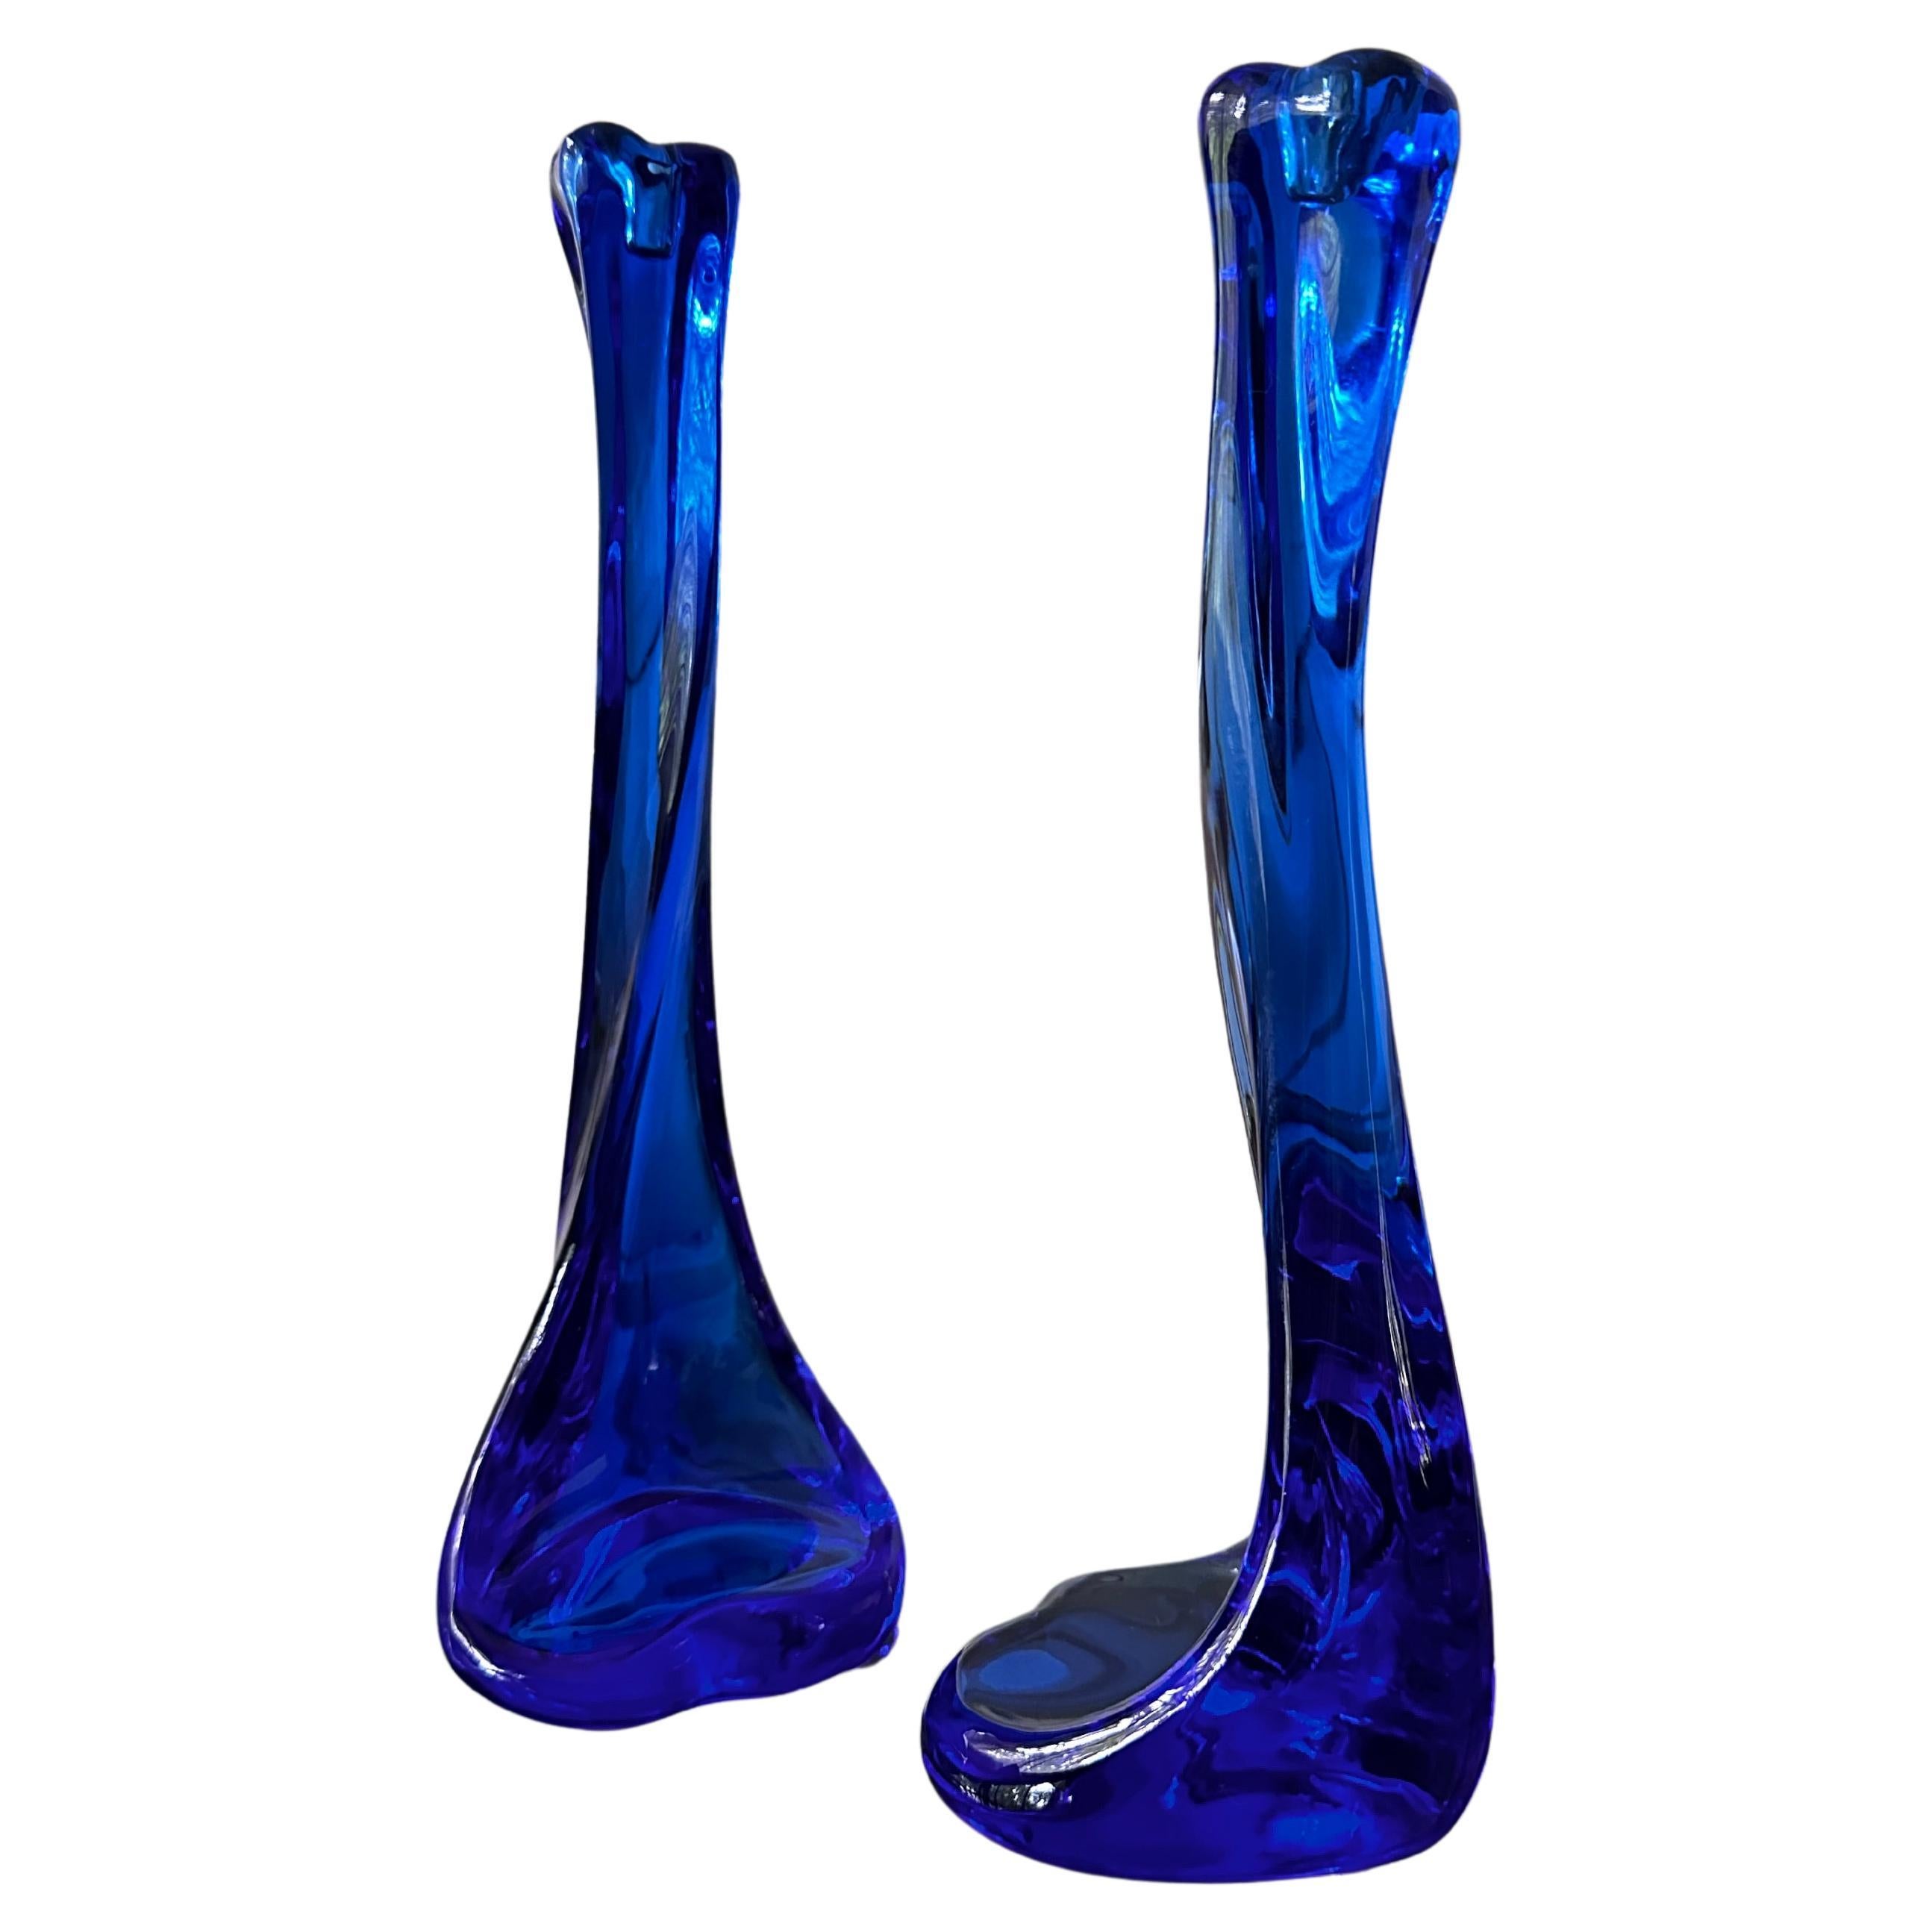 Blue Crystel "Bone" Series Candlesticks Designed by Elsa Peretti for Tiffany